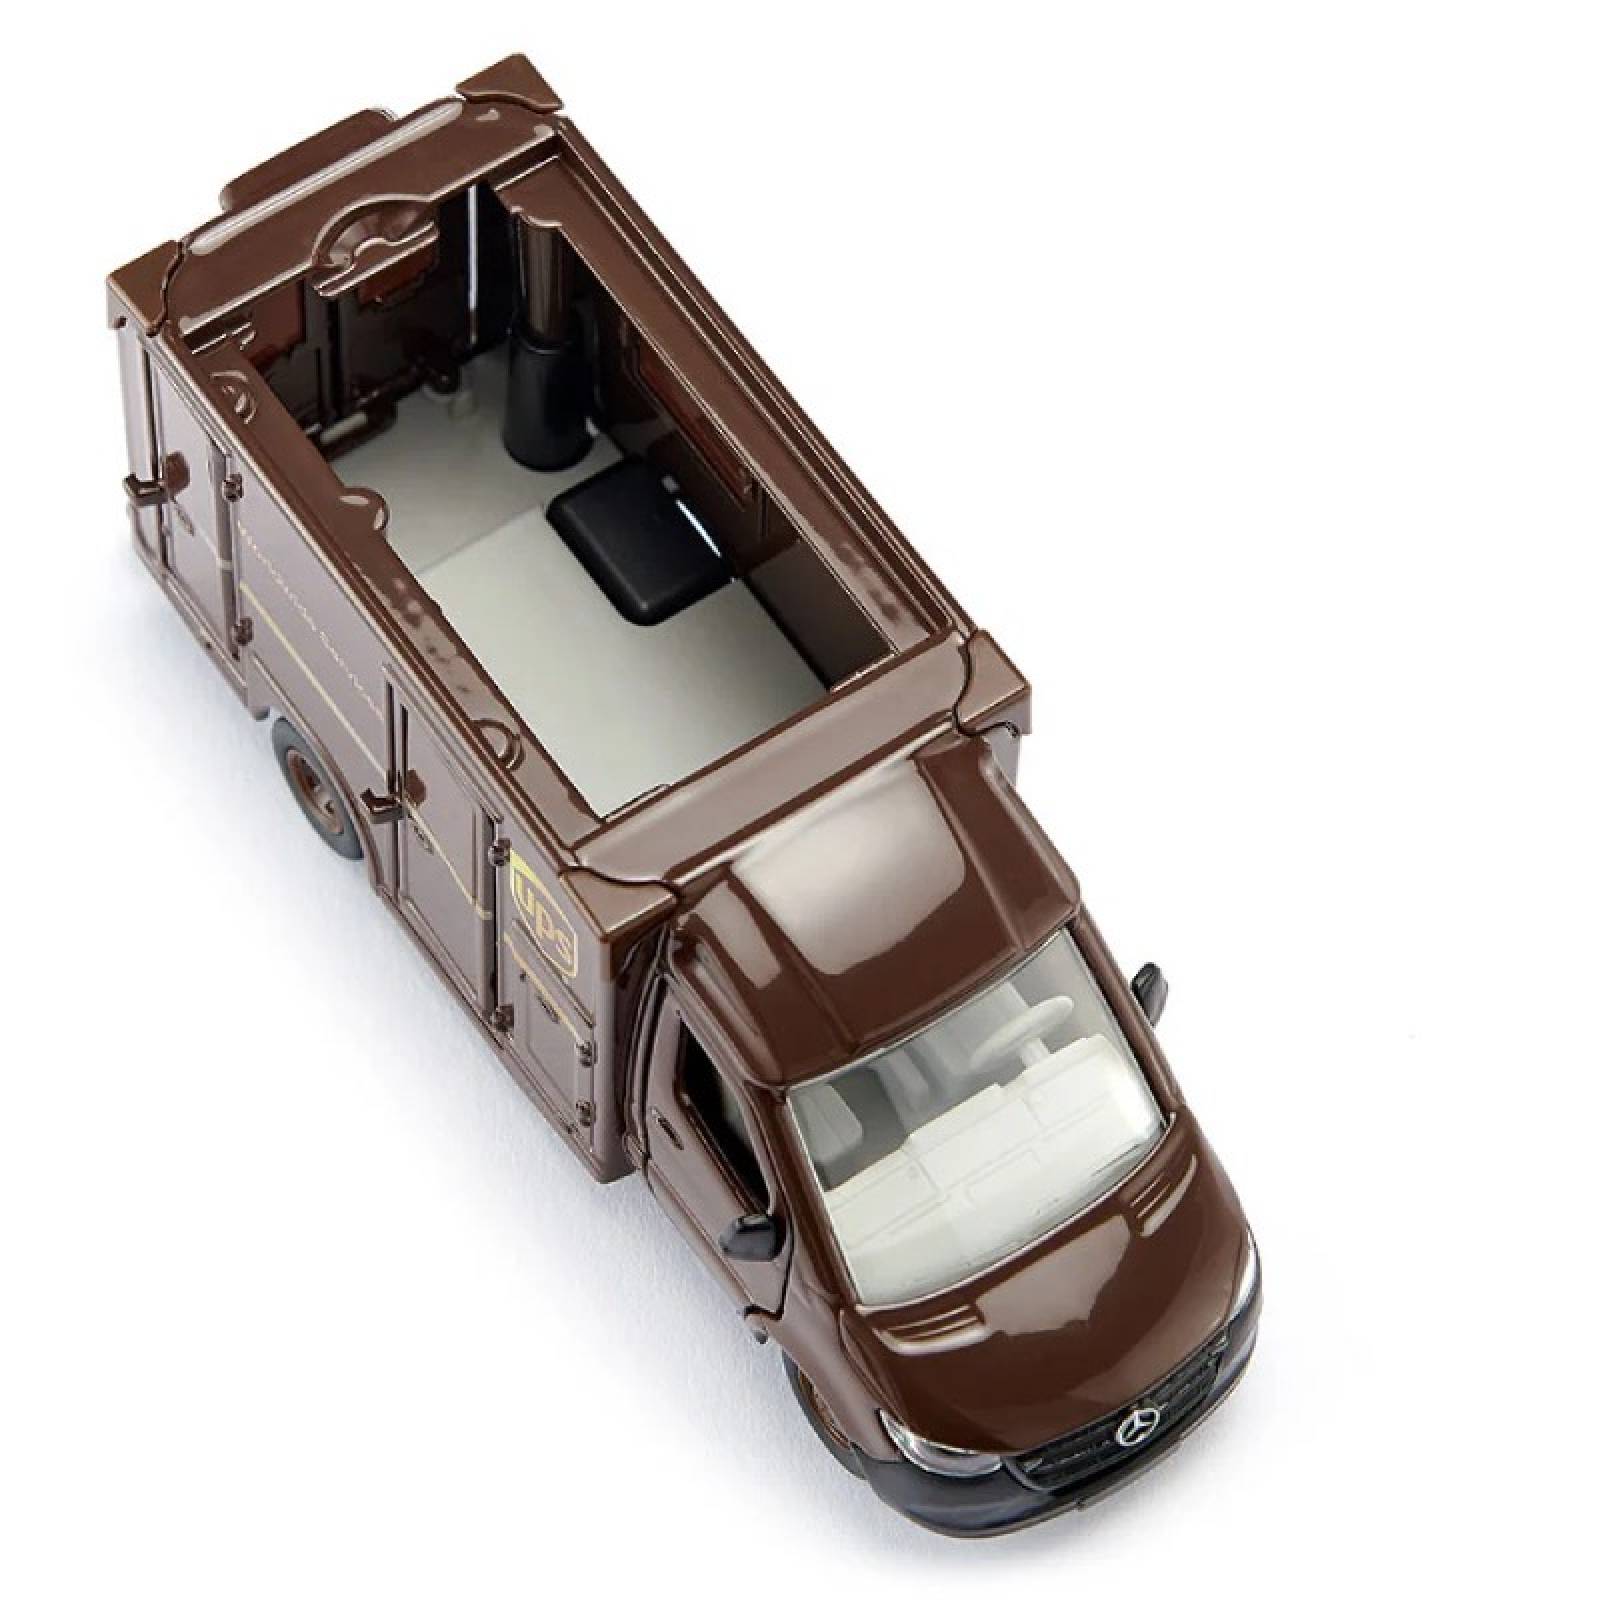 UPS Parcel Service Van - Die Cast Toy Vehicle +3 thumbnails